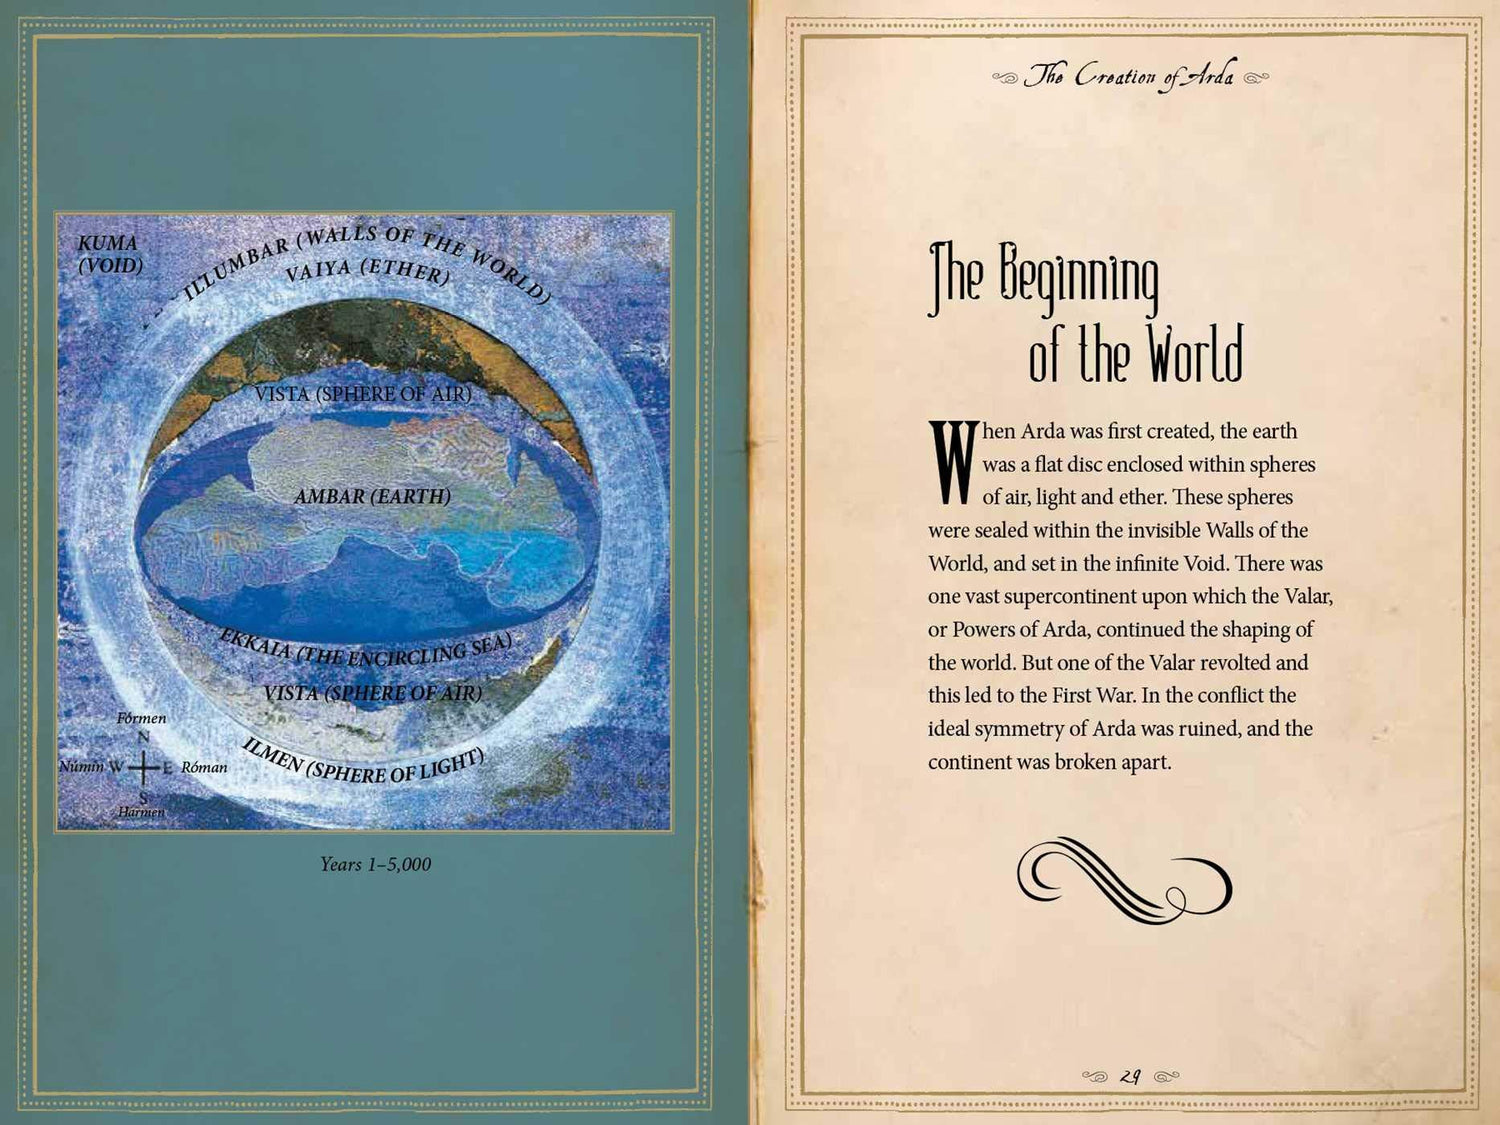 Atlas of Tolkien - D'Autores